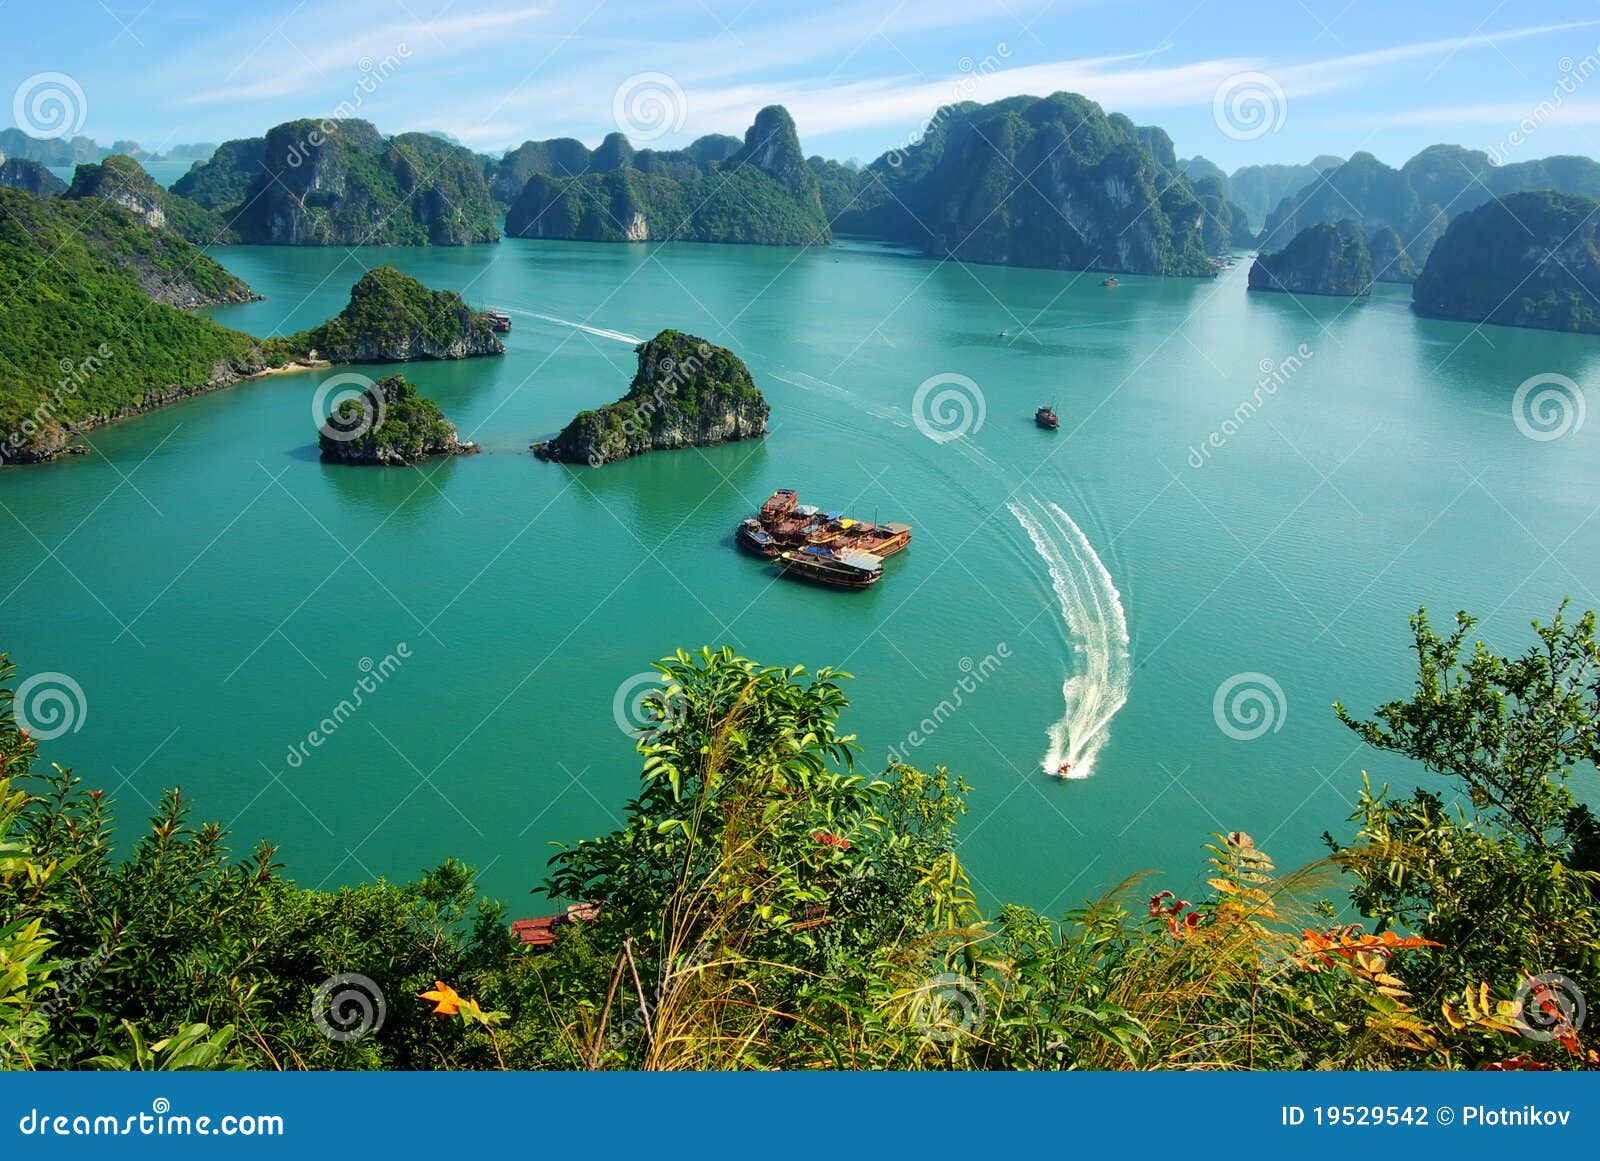 picturesque sea landscape. ha long bay, vietnam